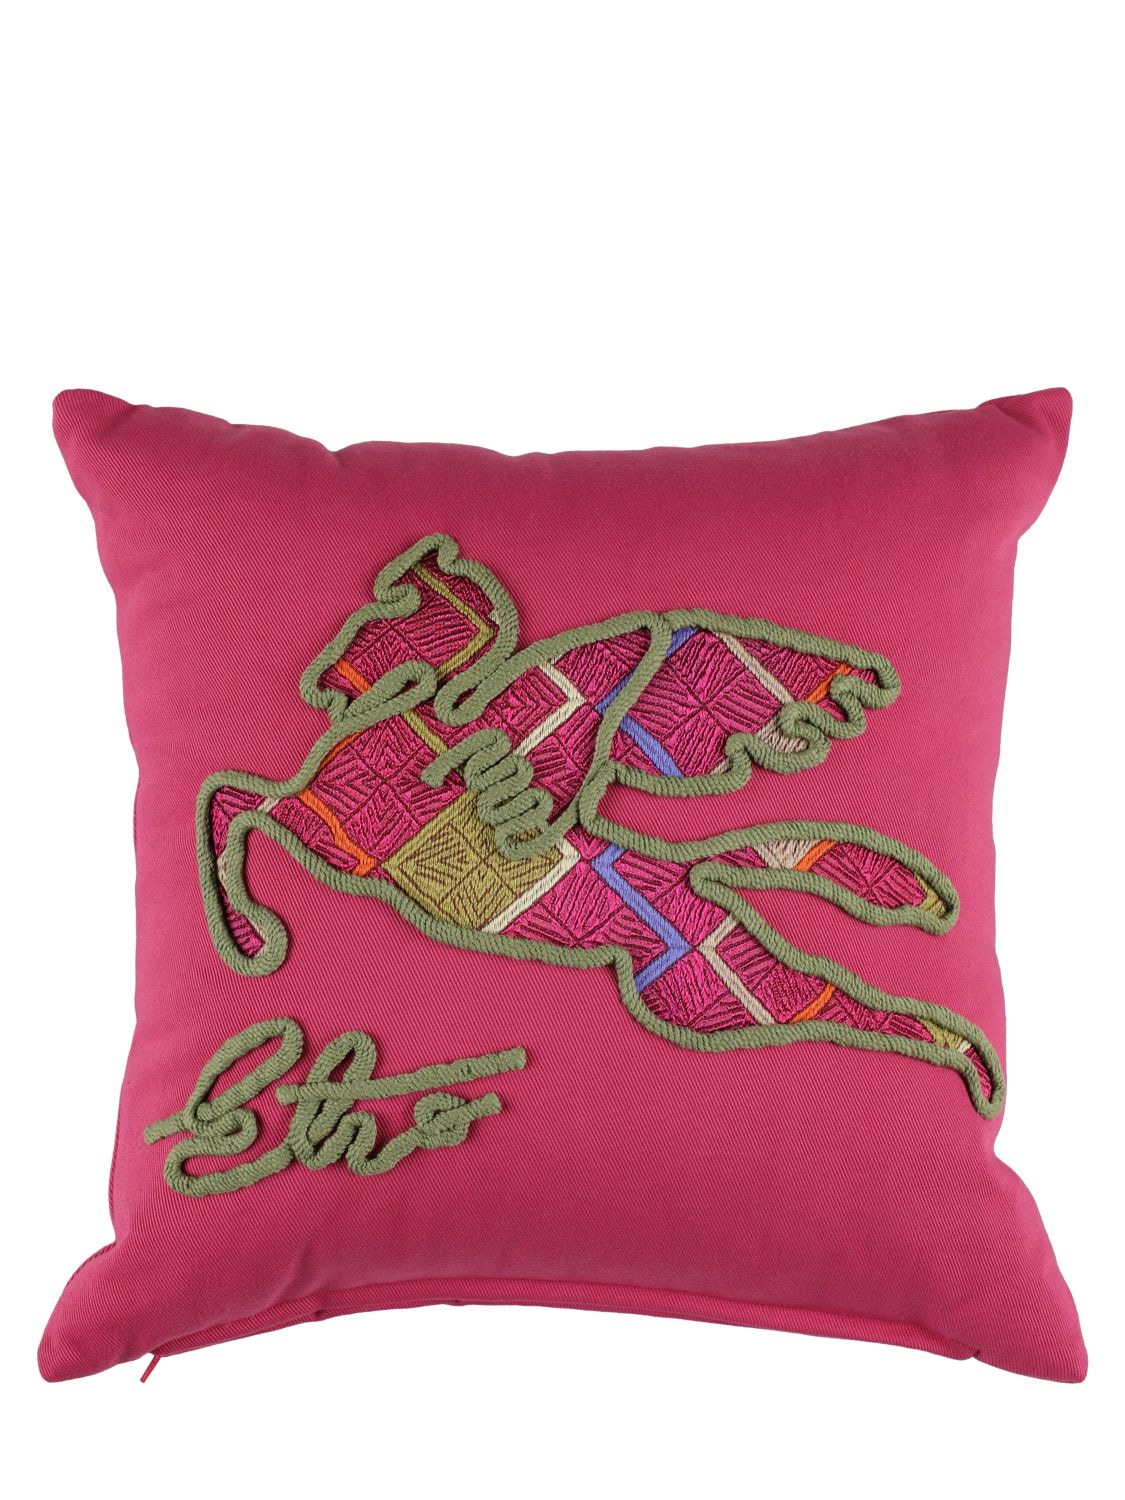 Etro Jaisalmer Embroidered Cushion In Pink